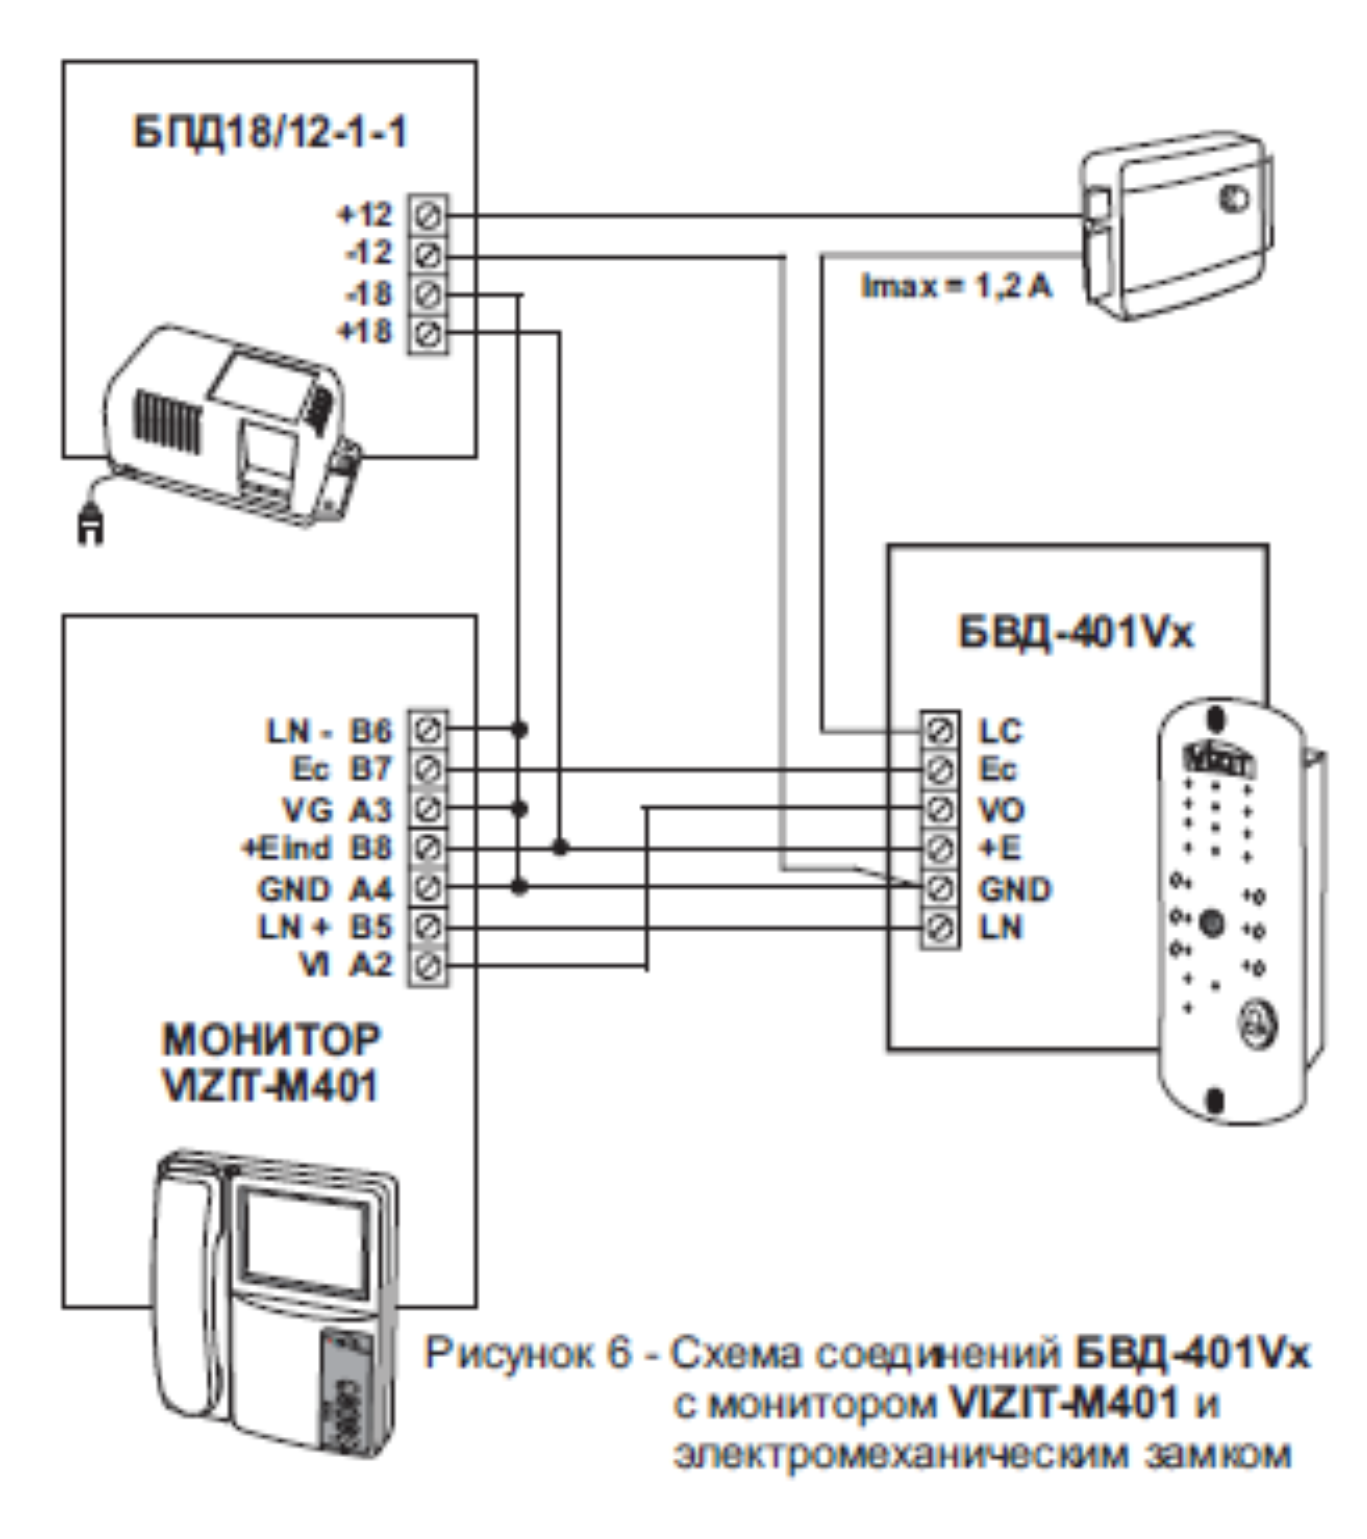 Схема соединений с монитором и электромеханическим замком